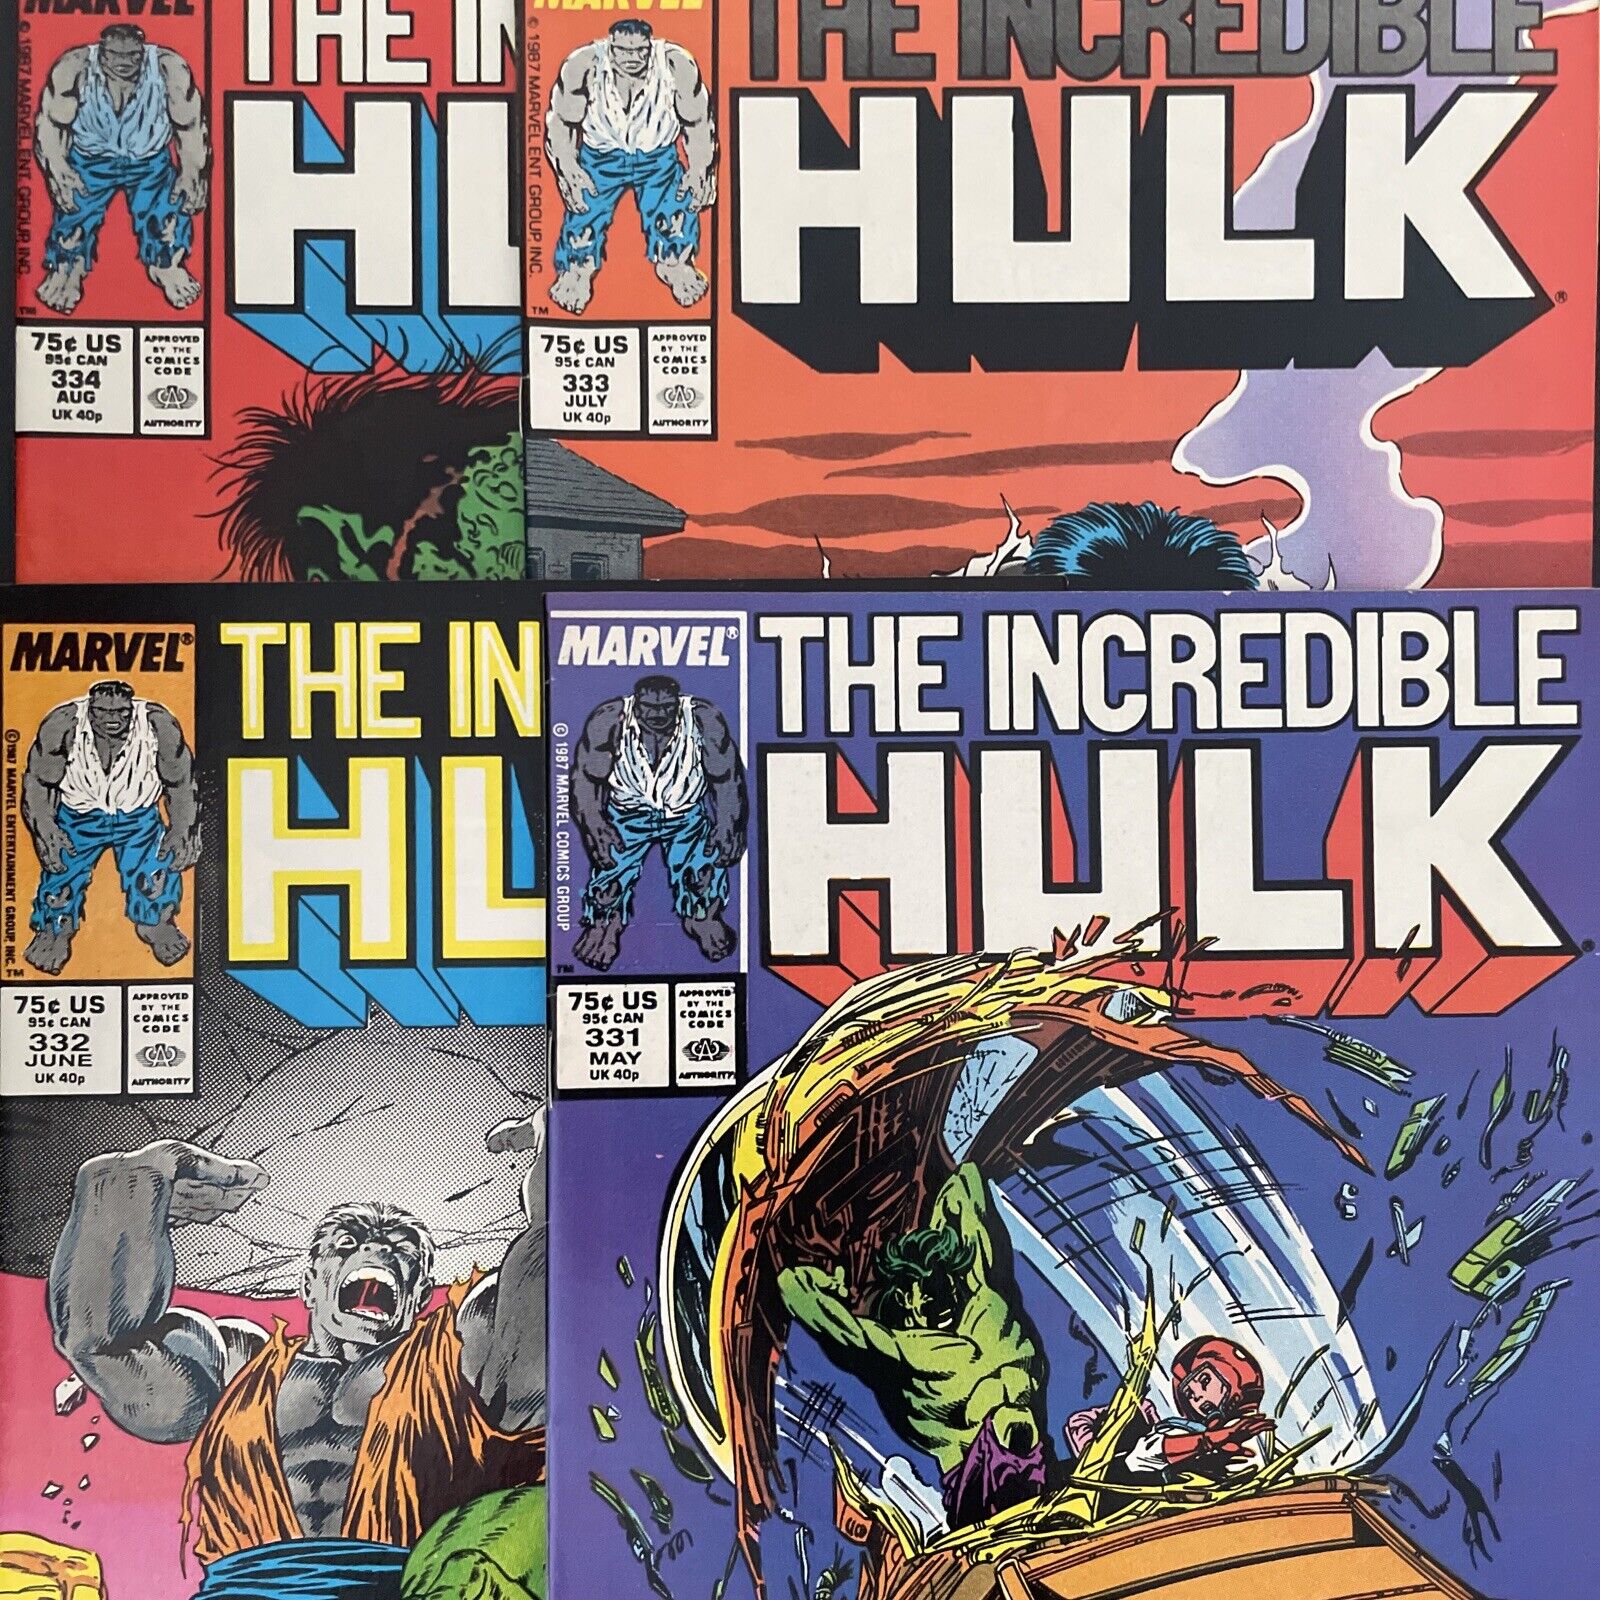 Incredible Hulk #331 332 333 & 334 (Marvel) Todd McFarlane Art Lot Of 4 Comics